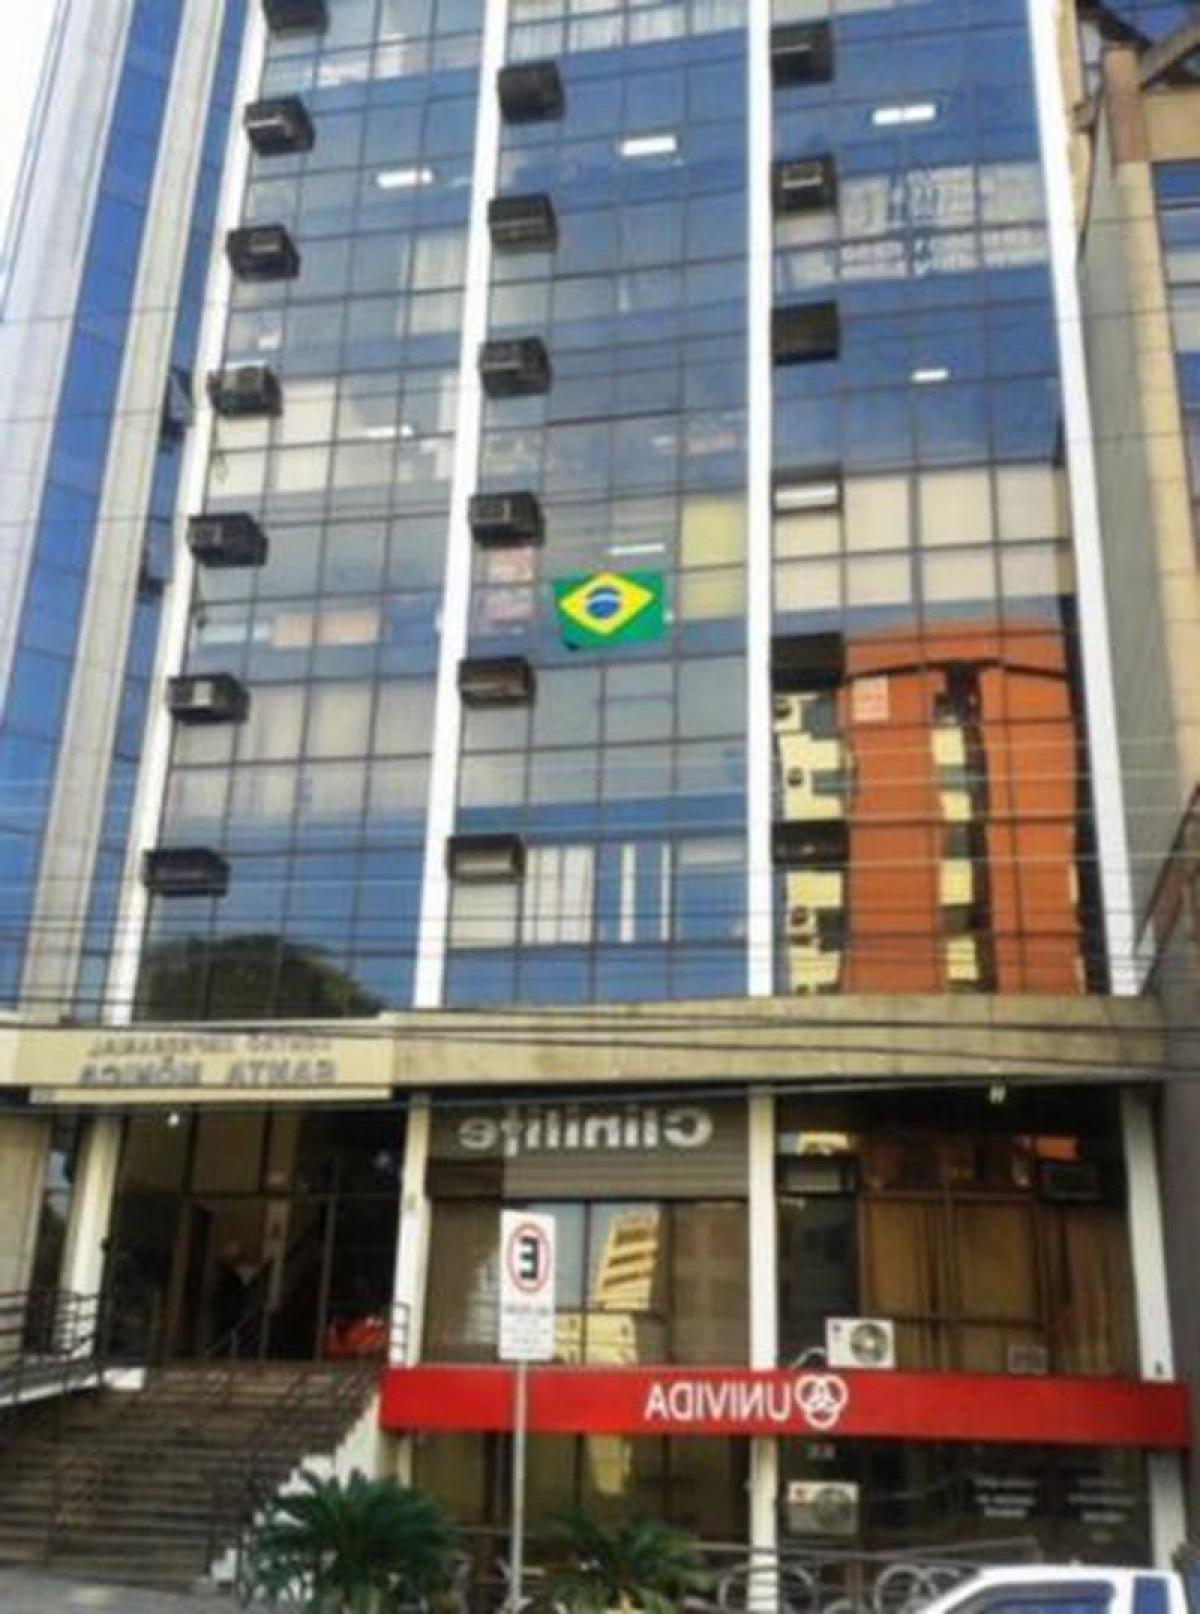 Picture of Commercial Building For Sale in Porto Alegre, Rio Grande do Sul, Brazil